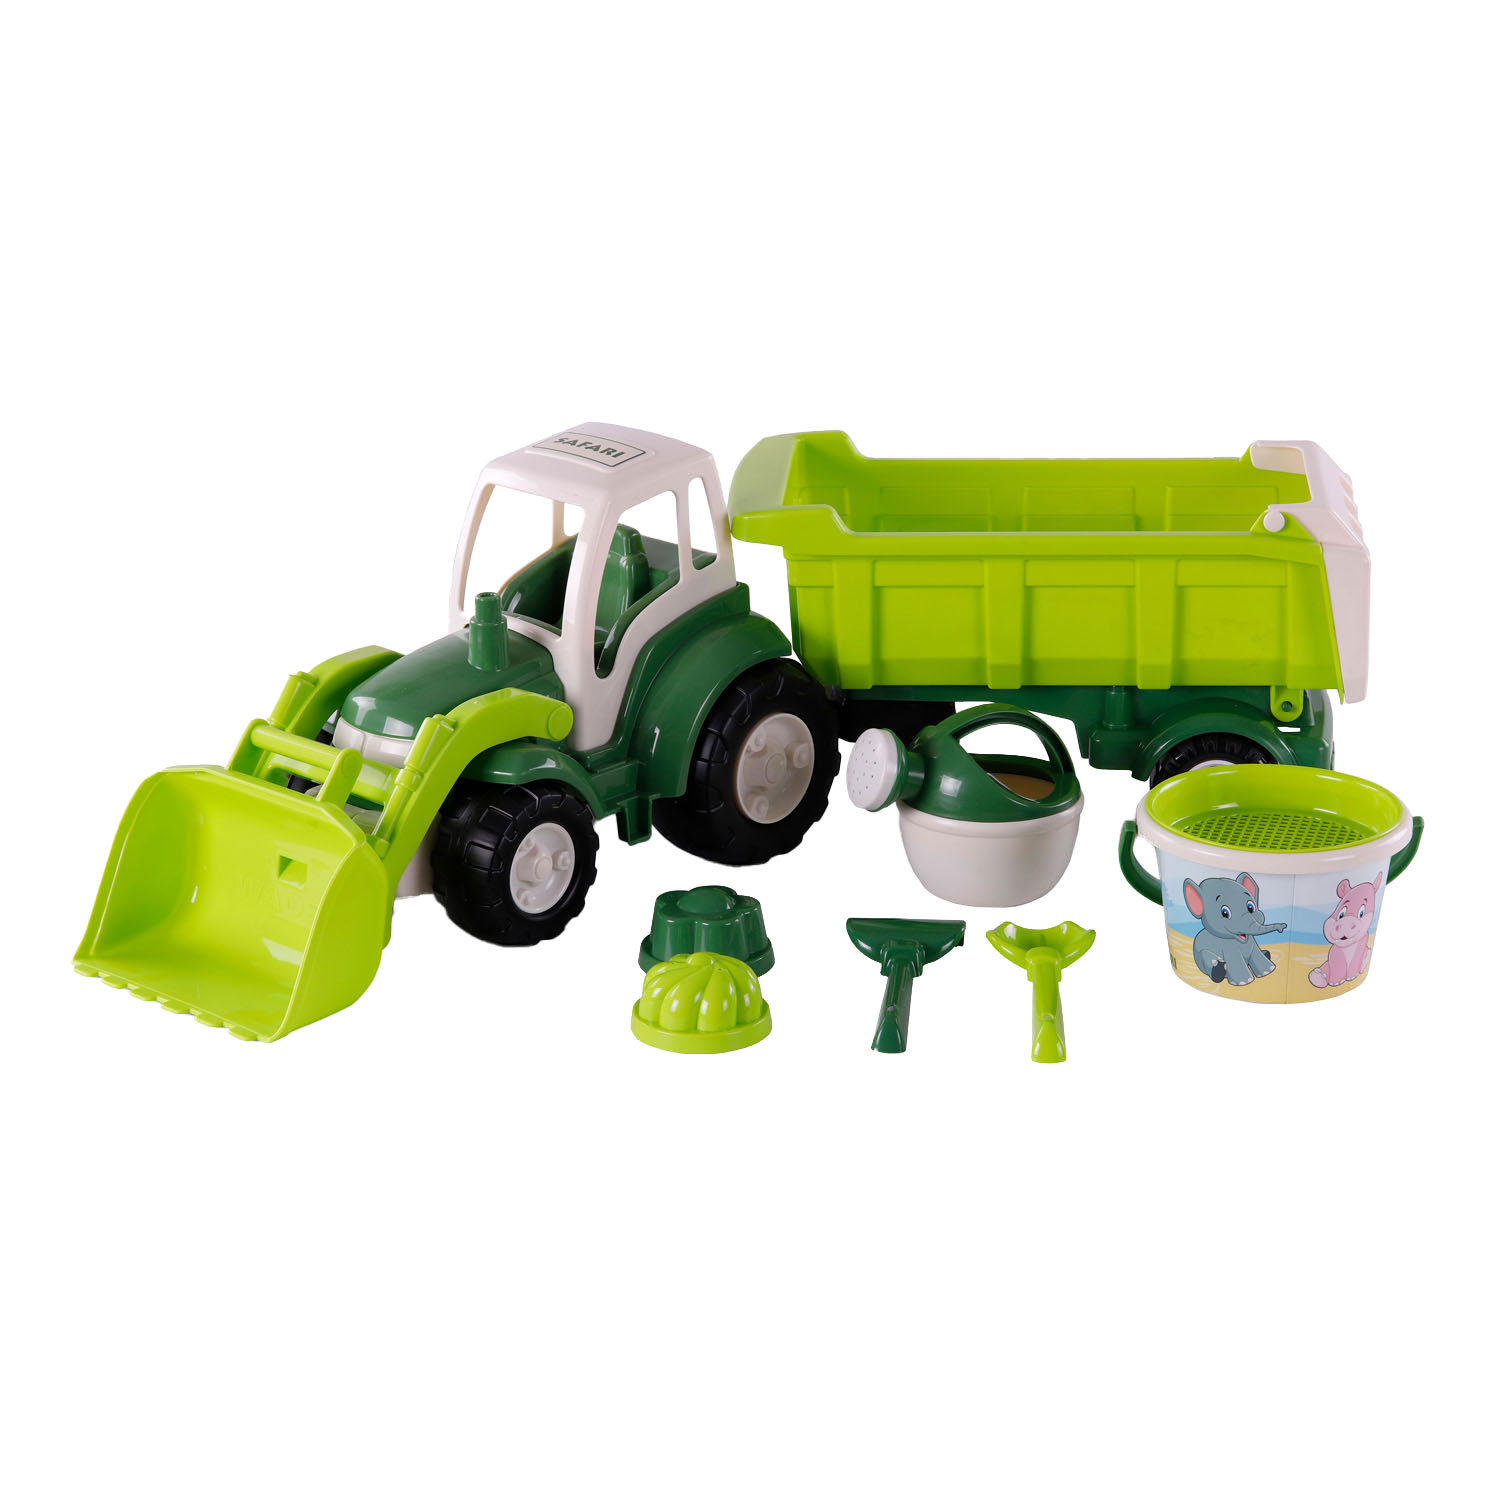 Cavallino XL Traktor Grün mit Kippanhänger und Schaufelset, 9-tlg.